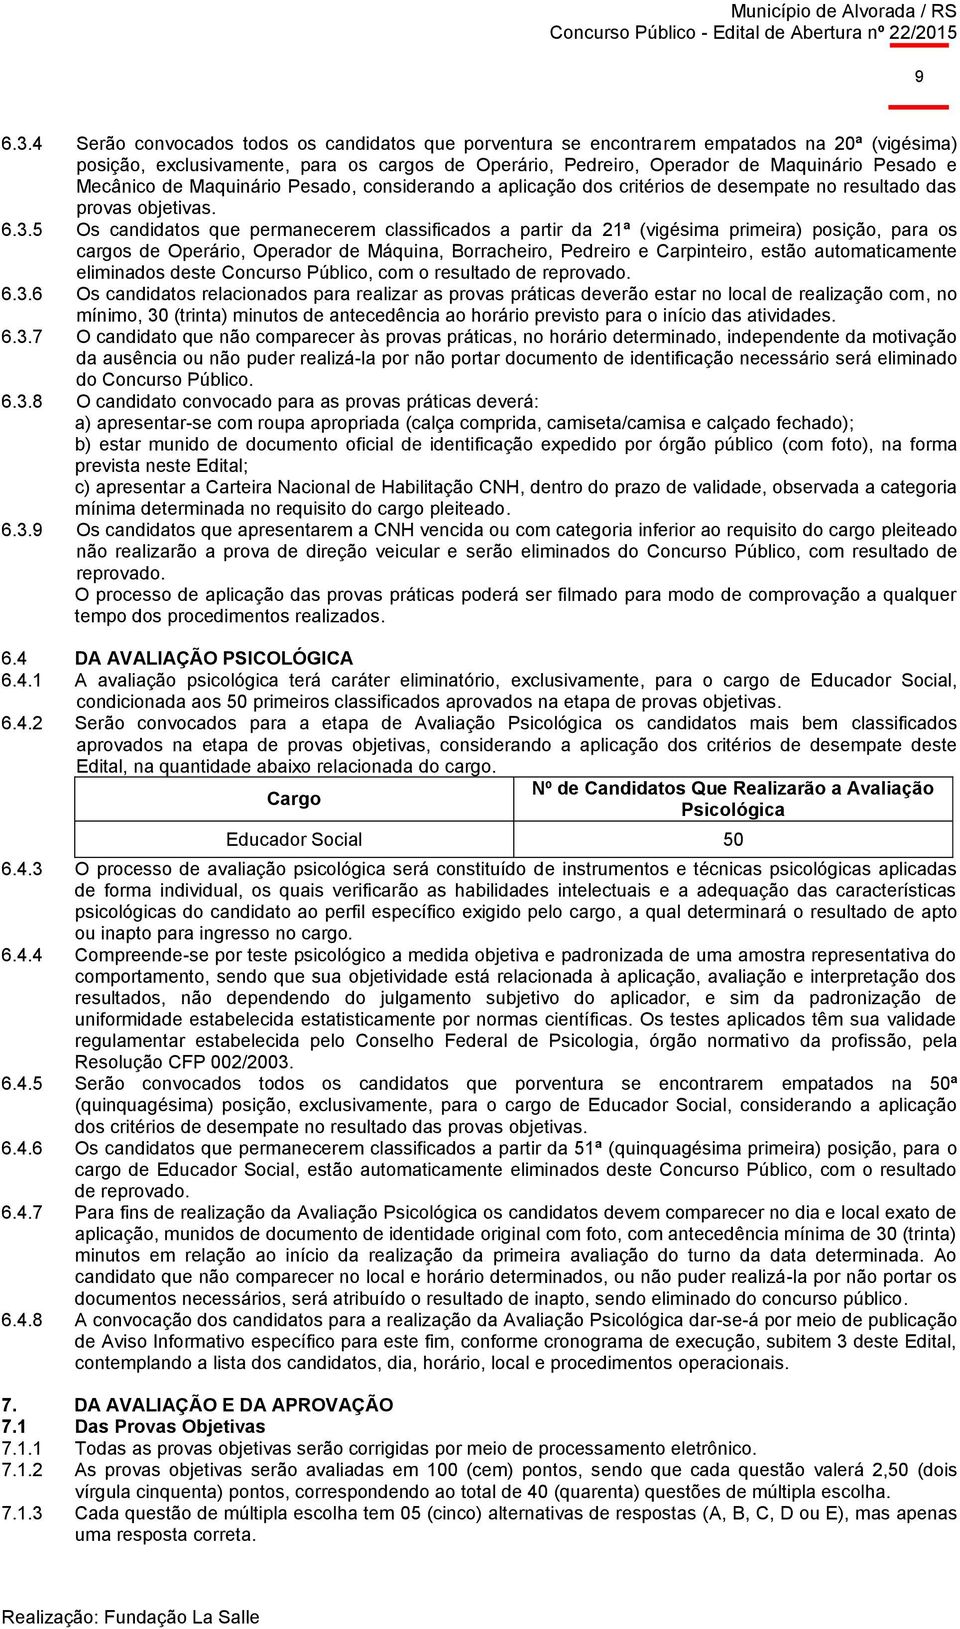 Mecânico de Maquinário Pesado, considerando a aplicação dos critérios de desempate no resultado das provas objetivas. 6.3.